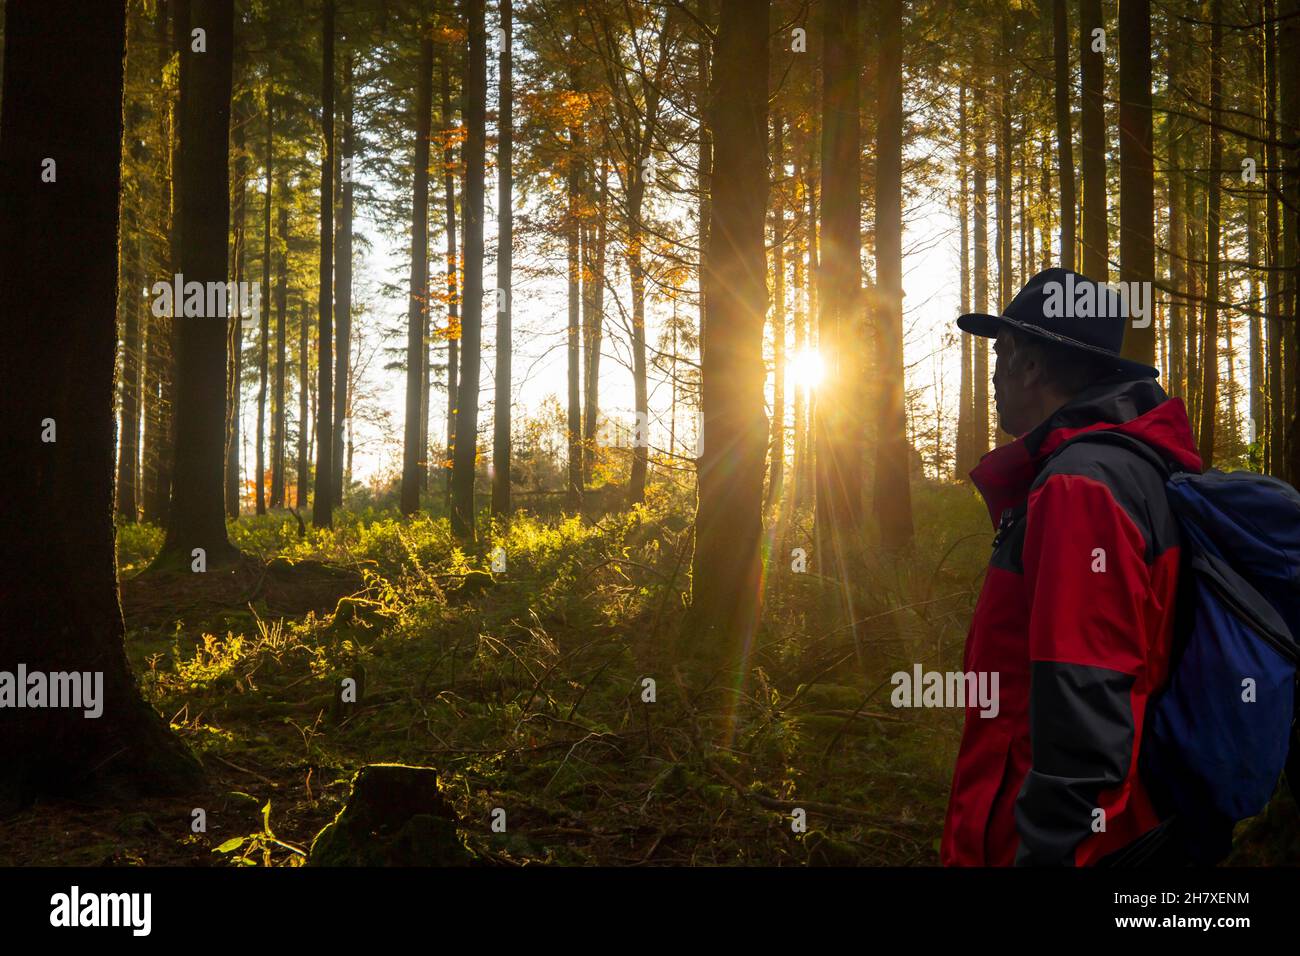 Symbolbild: Schöner Tannenwald bei tiefstehender Sonne Stock Photo